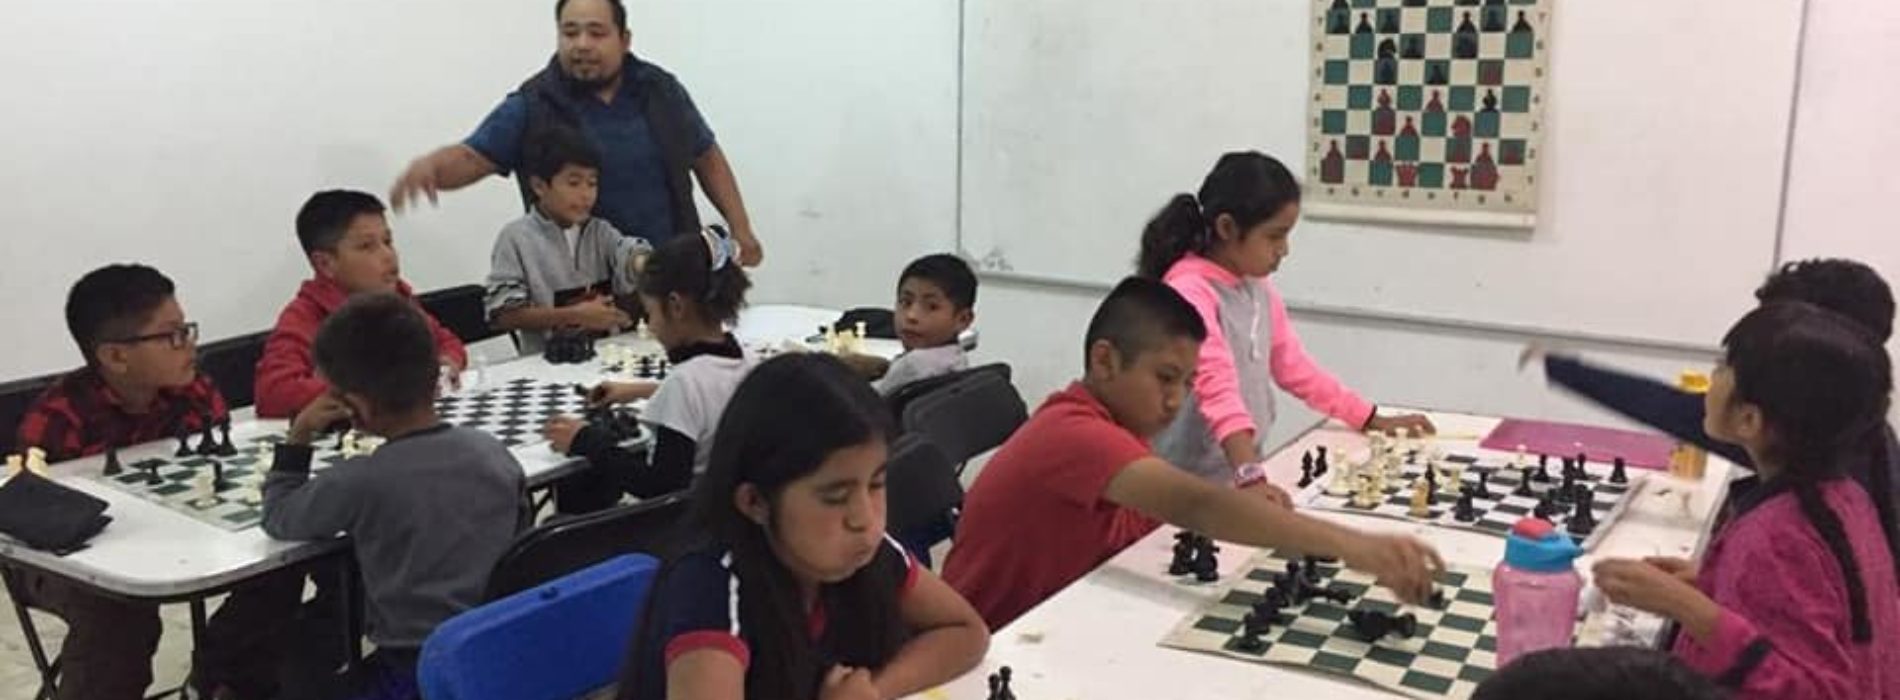 Aprender y jugar ajedrez desarrolla la  capacidad intelectual en estudiantes